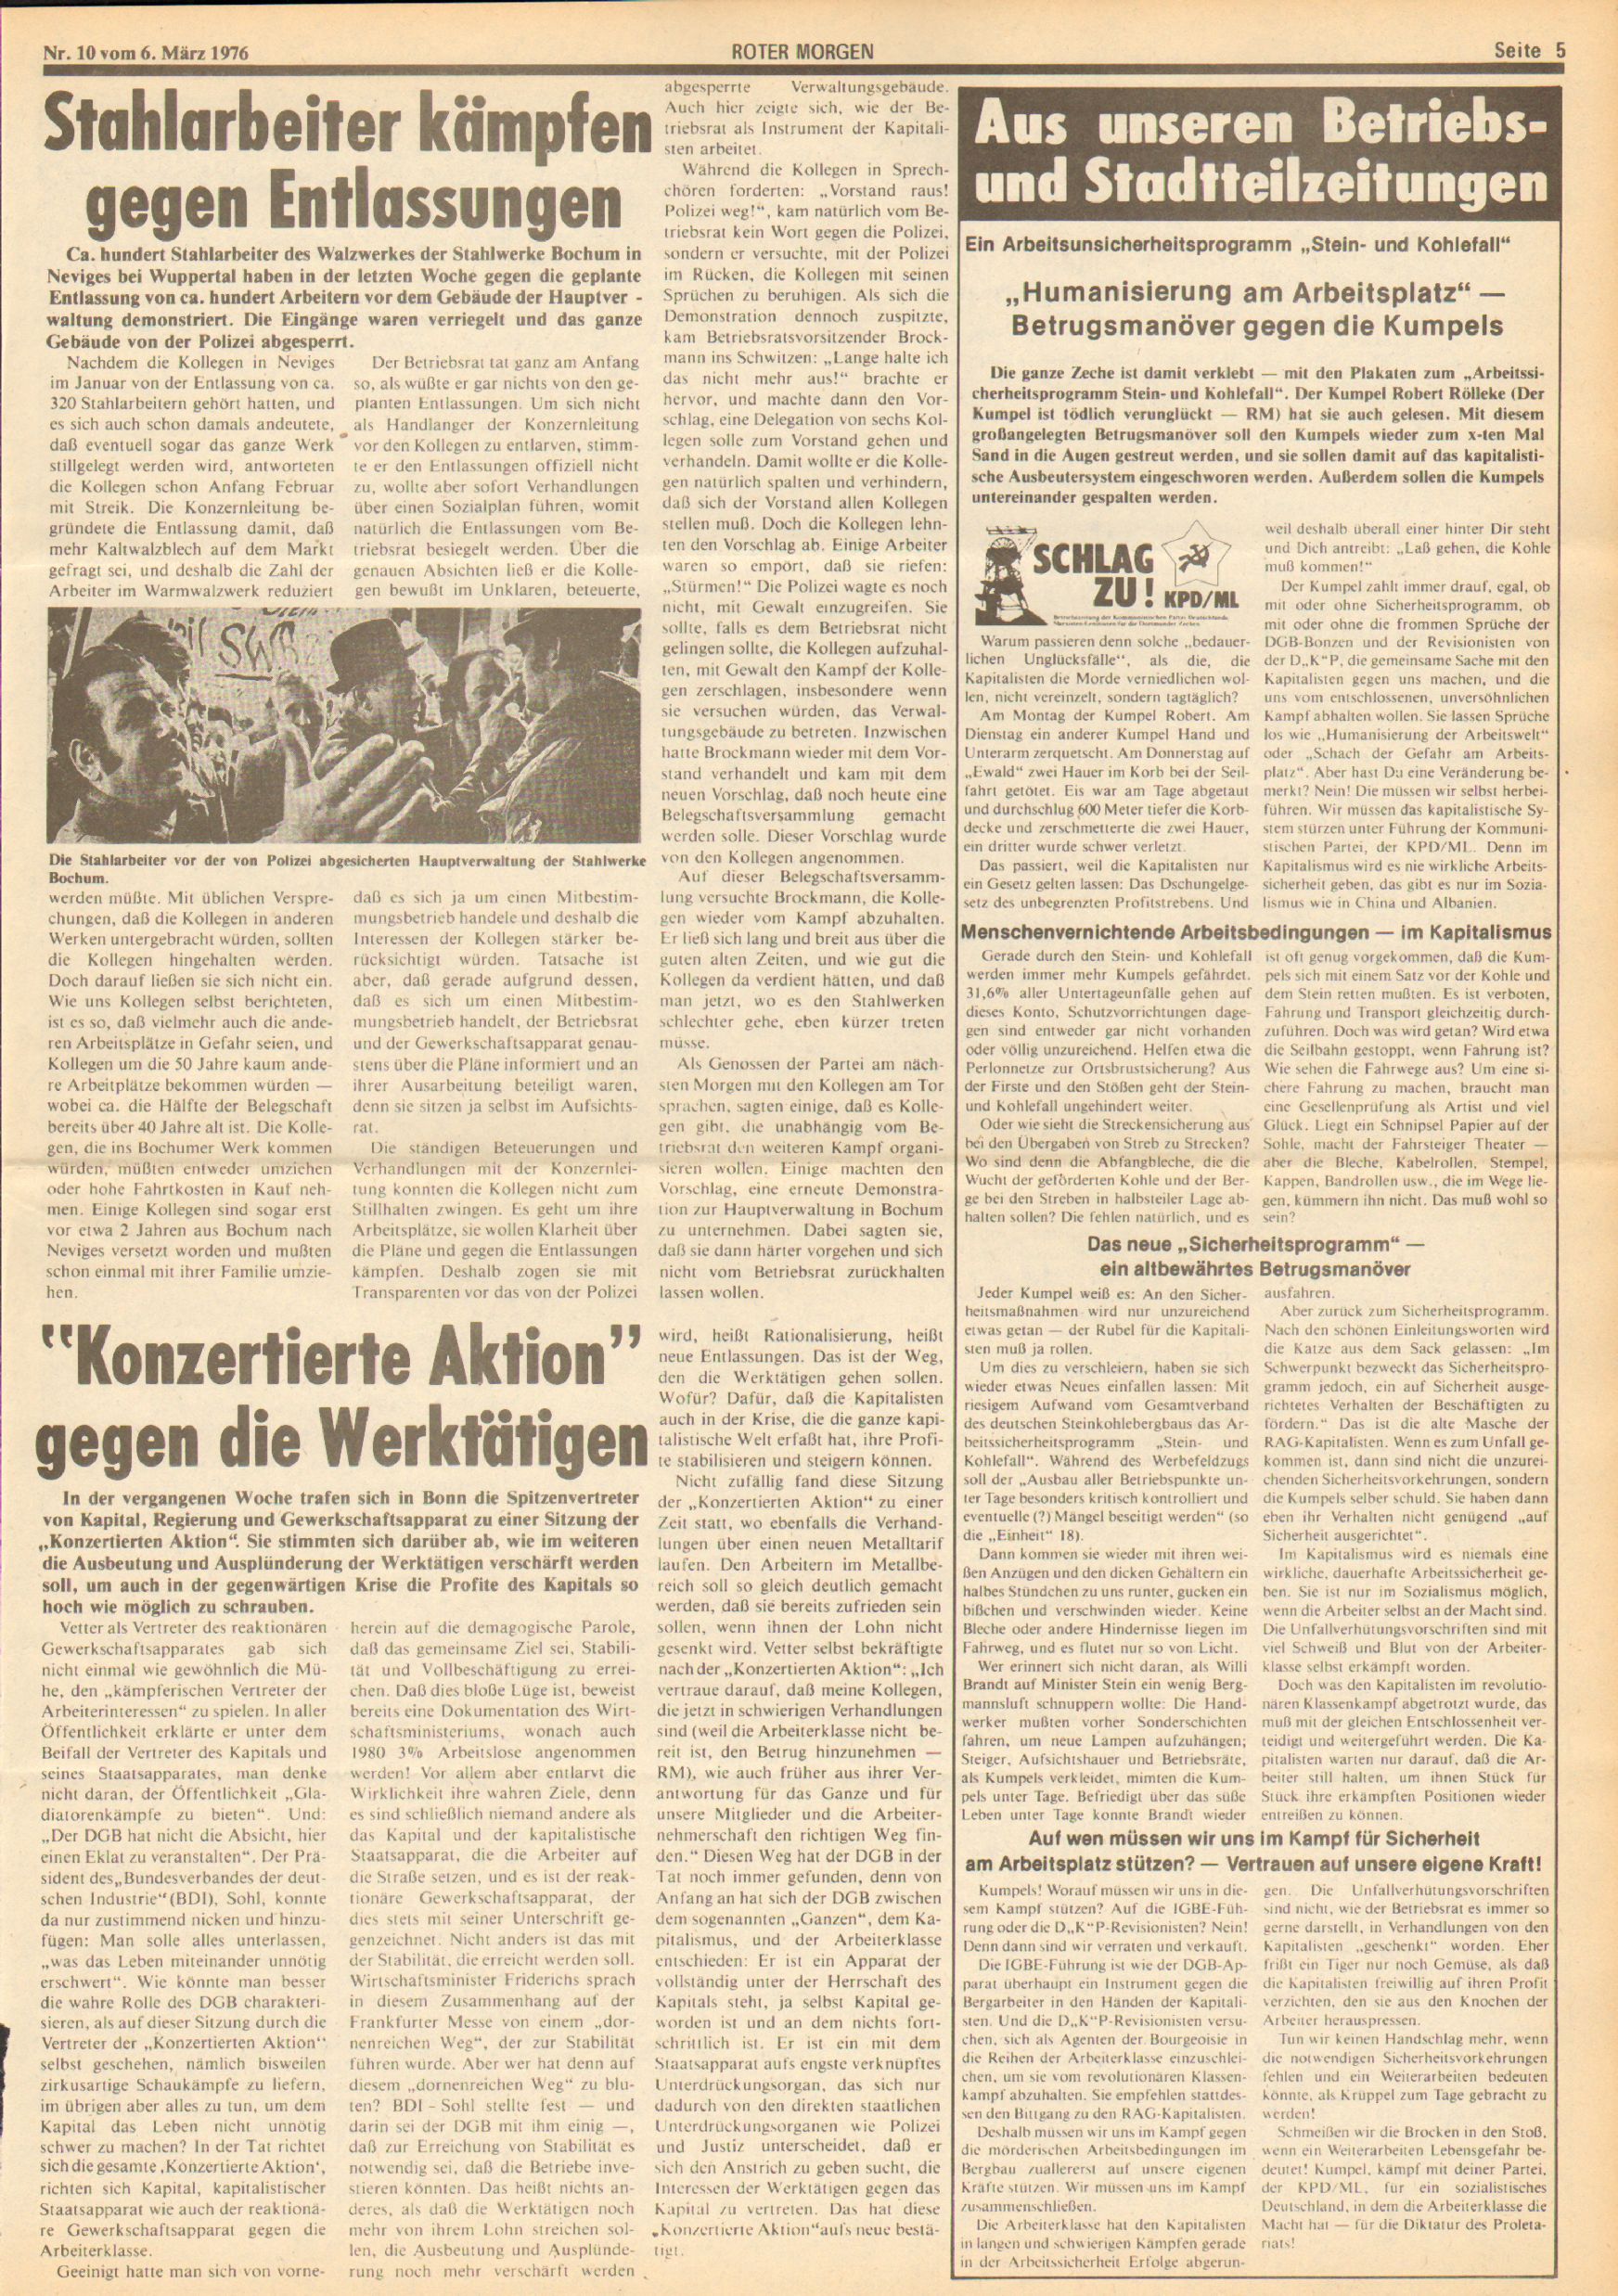 Roter Morgen, 10. Jg., 6. März 1976, Nr. 10, Seite 5